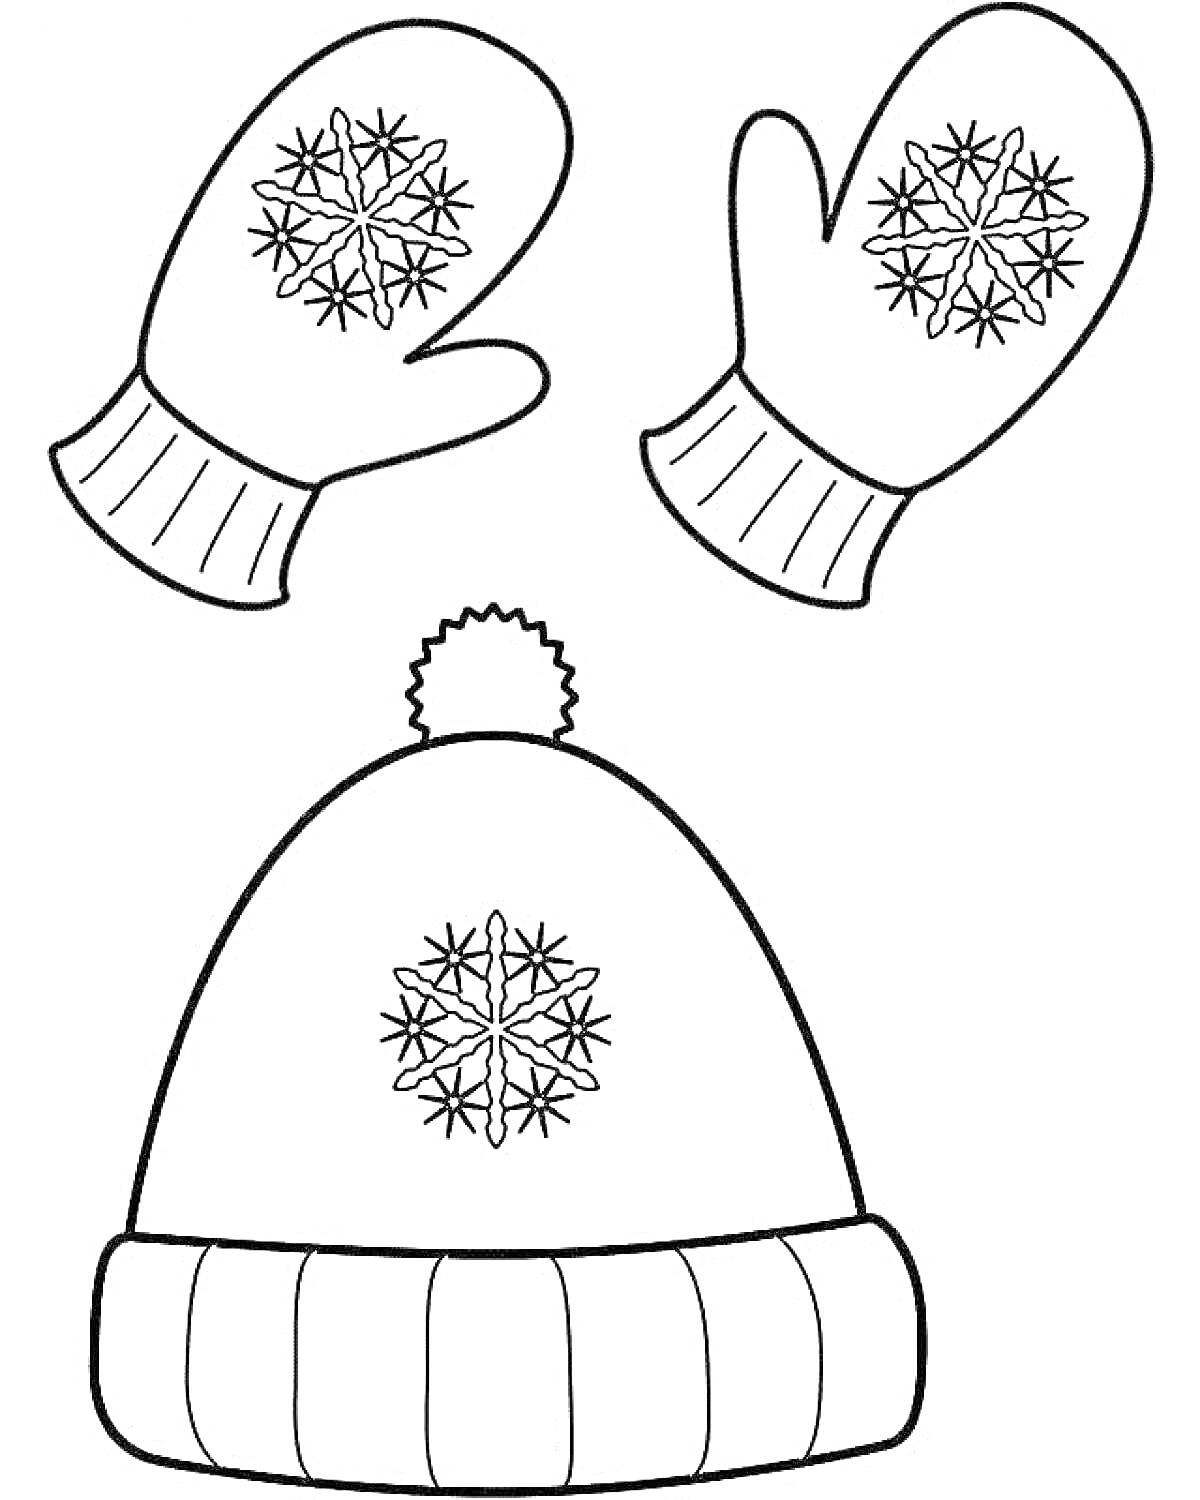 Раскраска варежки с узором снежинки, шапка с помпоном и узором снежинки